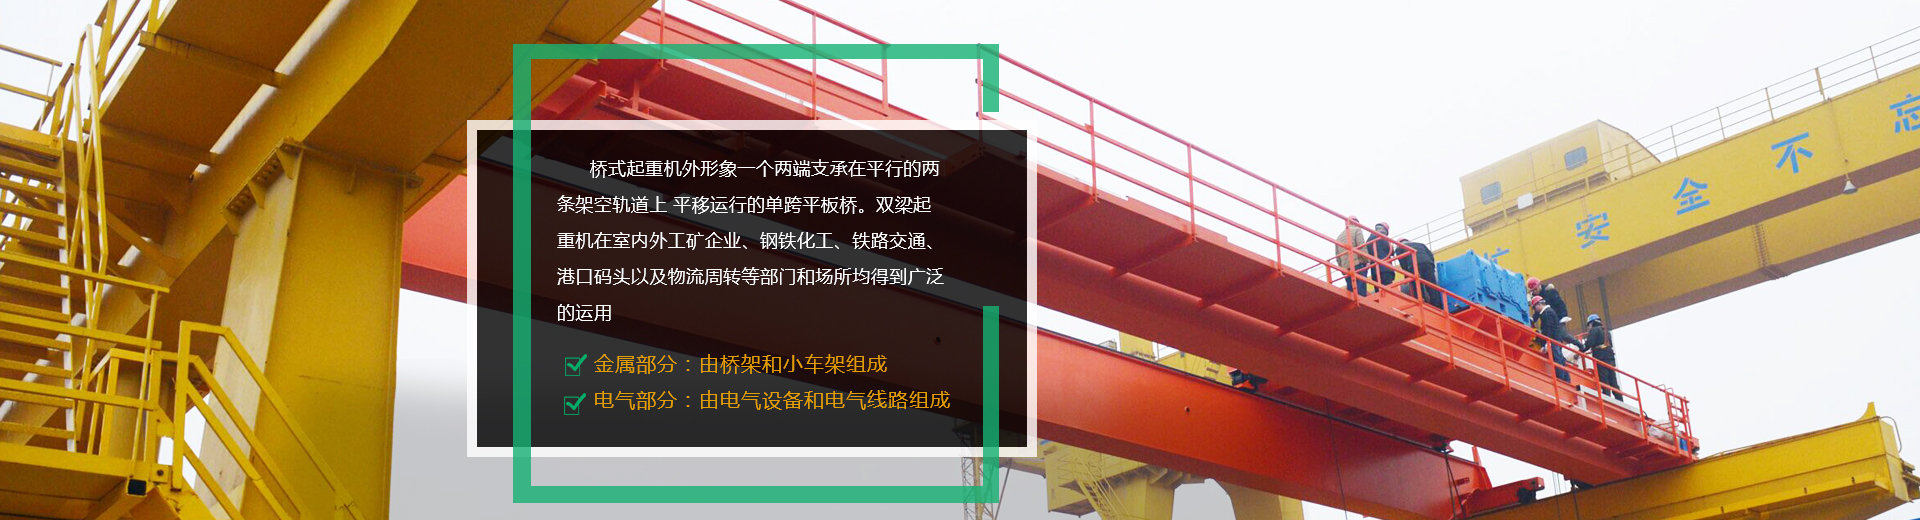 河南省矿山起重机有限公司西工分公司